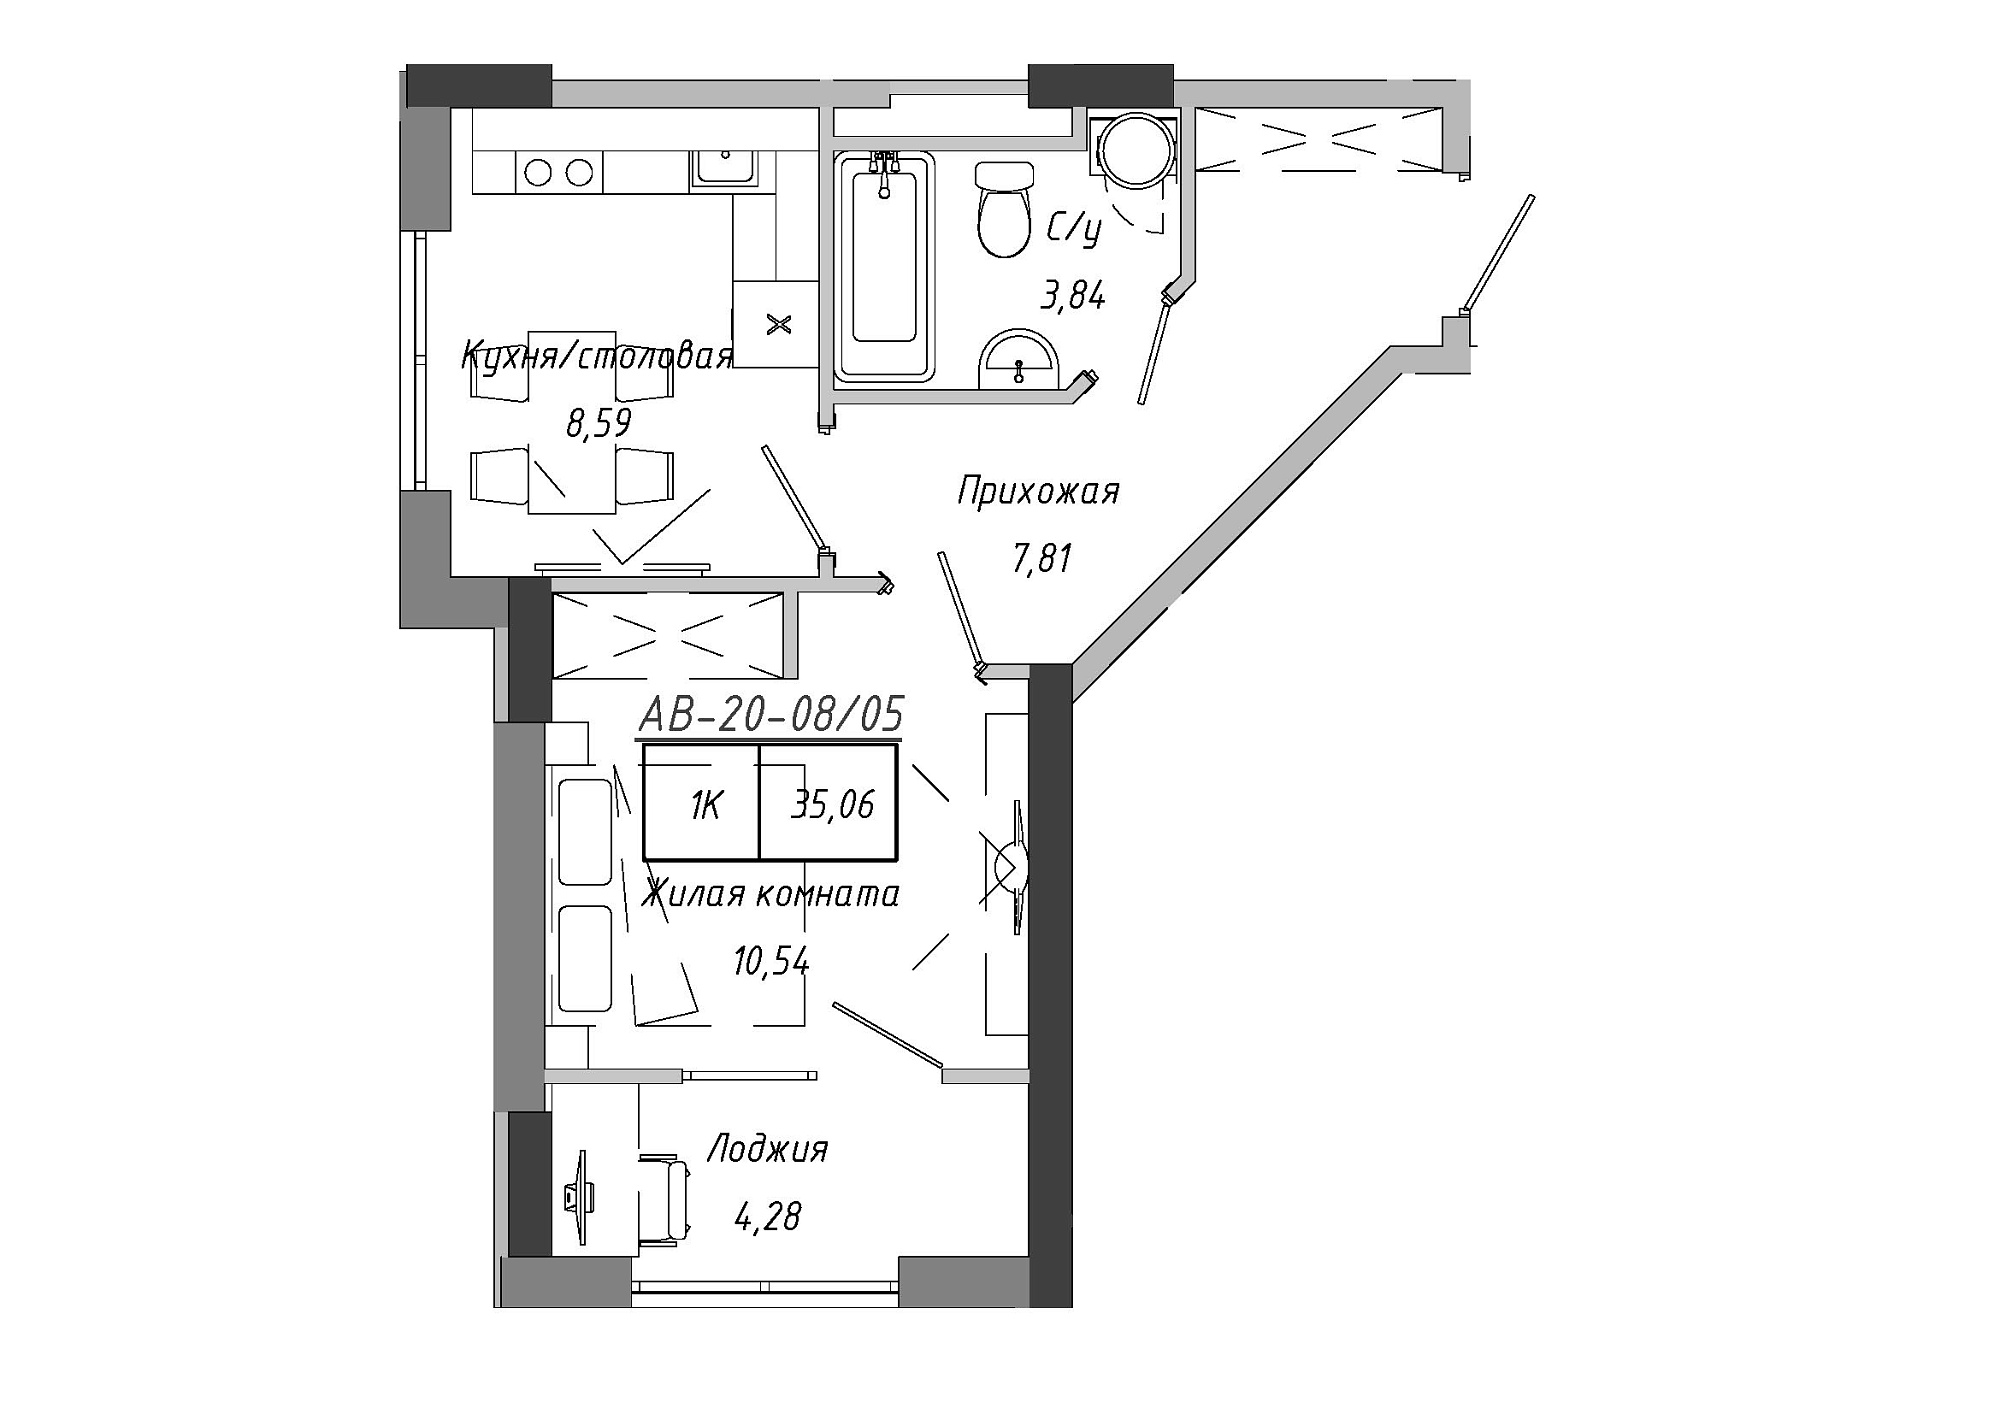 Планировка 1-к квартира площей 33.55м2, AB-20-08/00005.